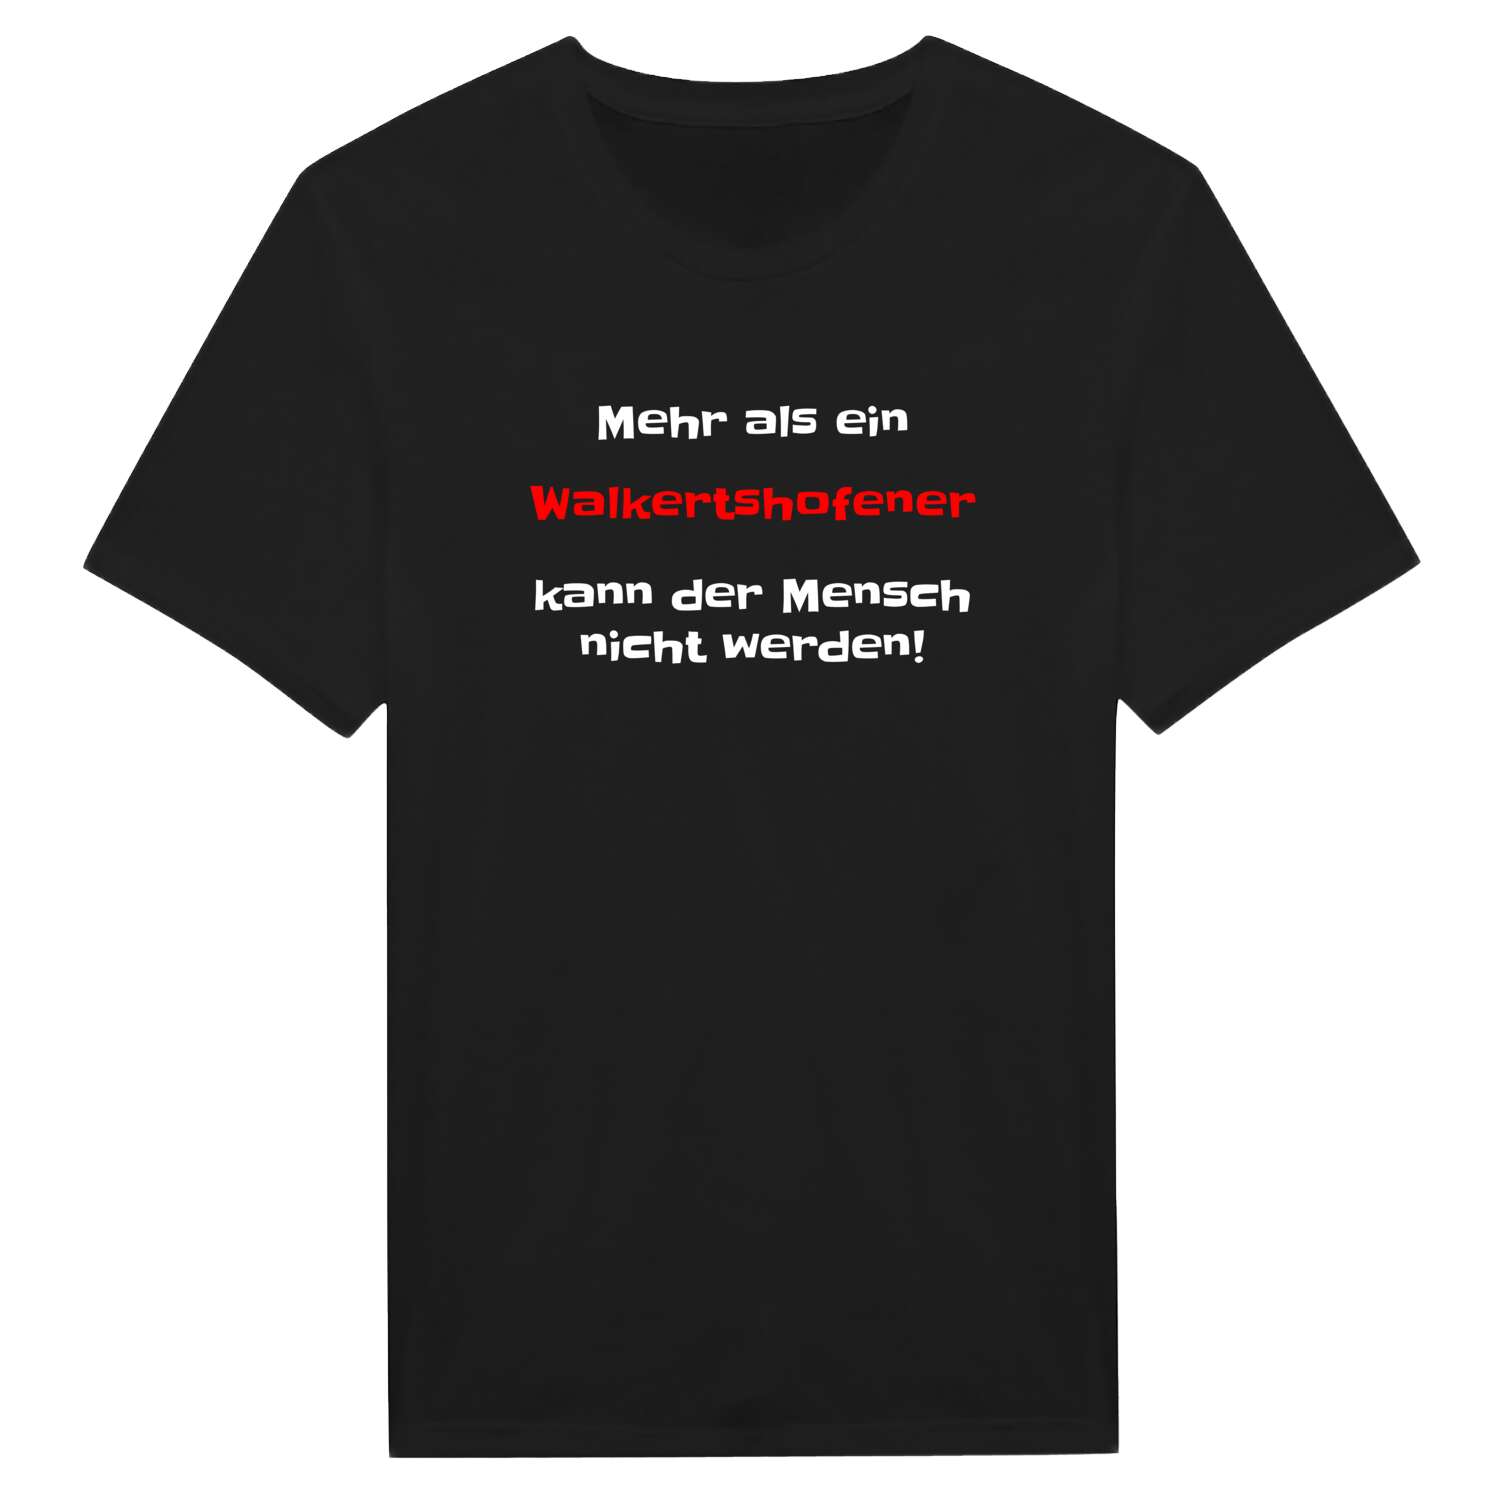 Walkertshofen T-Shirt »Mehr als ein«